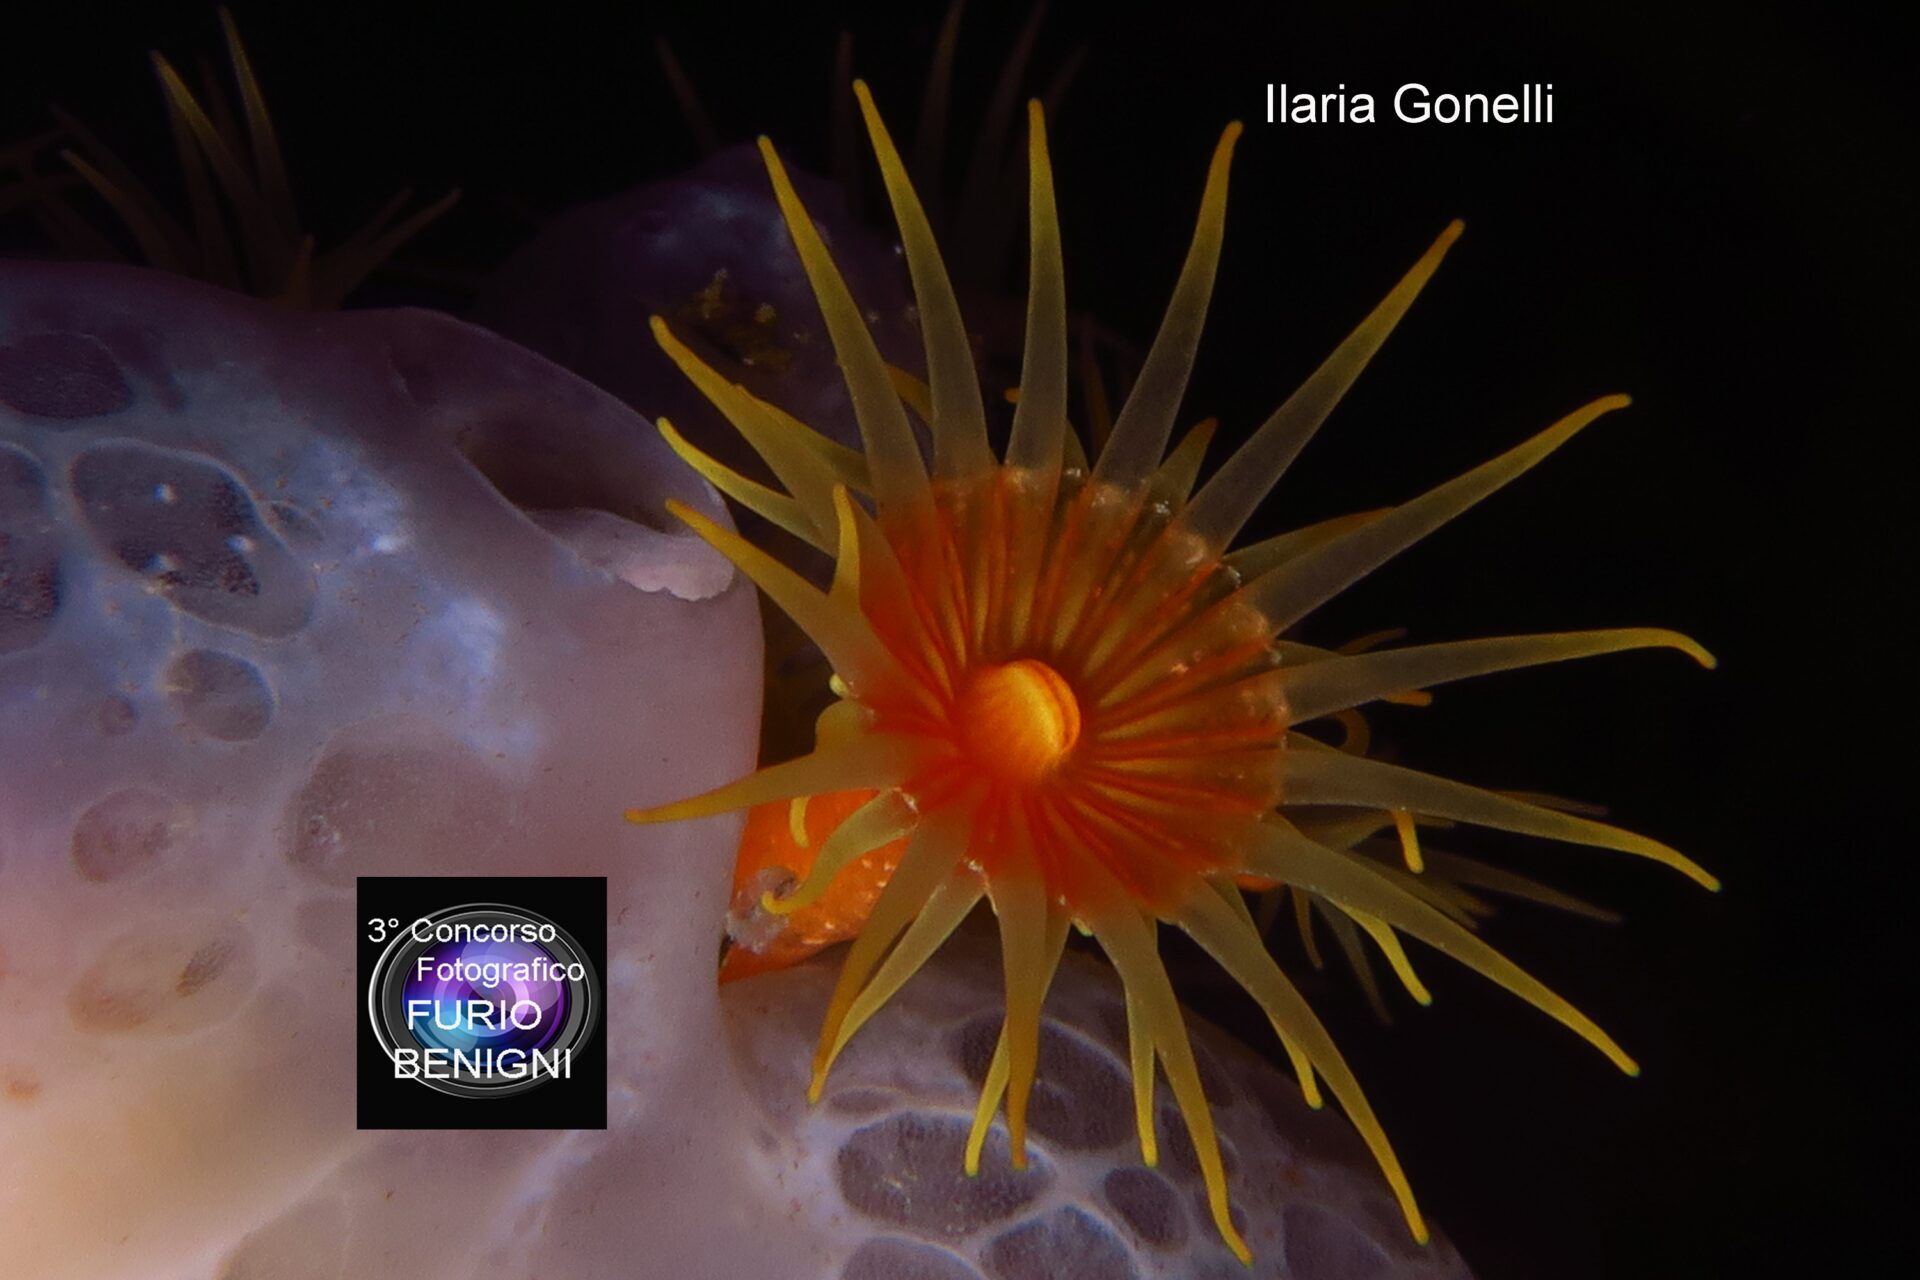 subacquea, Concorso Fotografico Furio Benigni - ILARIA GONELLI, Sunflower